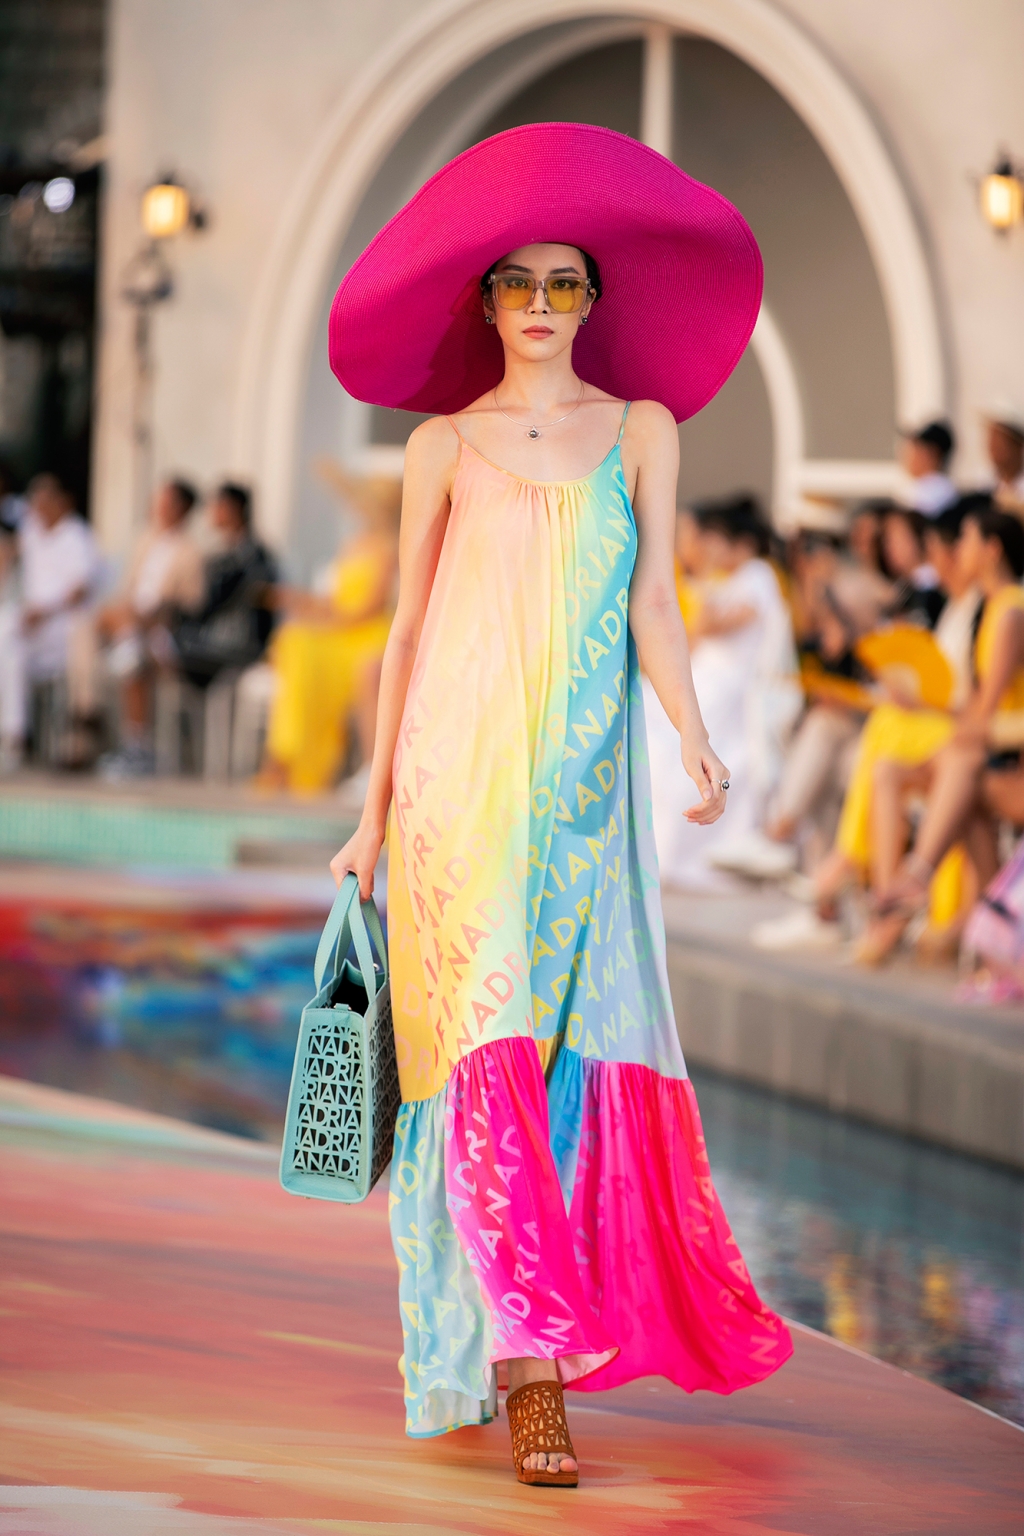 'Chị đại' Thanh Hằng khiến dân tình 'lâng lâng' khi sải bước dưới ánh hoàng hôn tại 'Fashion Voyage'